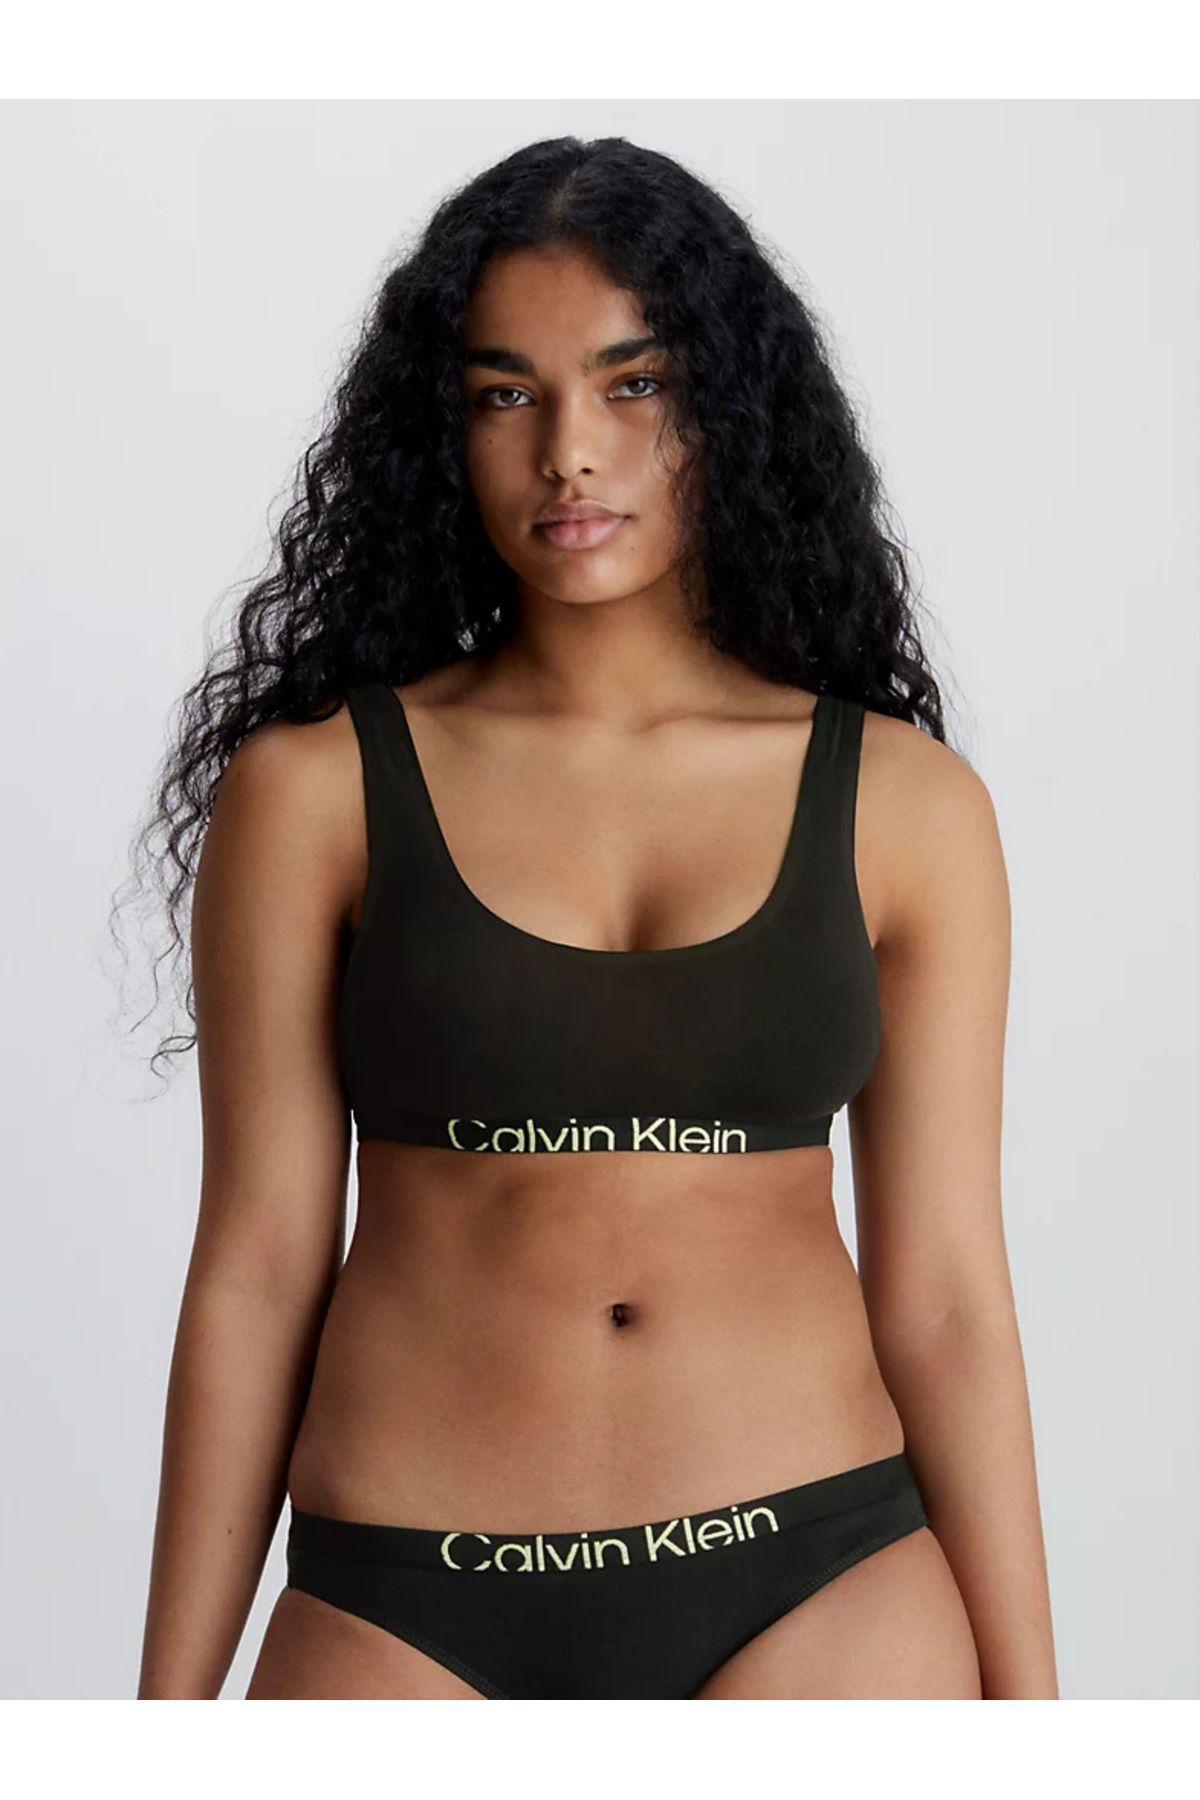 Calvin Klein Kadın Imzalı Elastik Bantlı Siyah Spor Sütyeni 000qf7400e-ub1